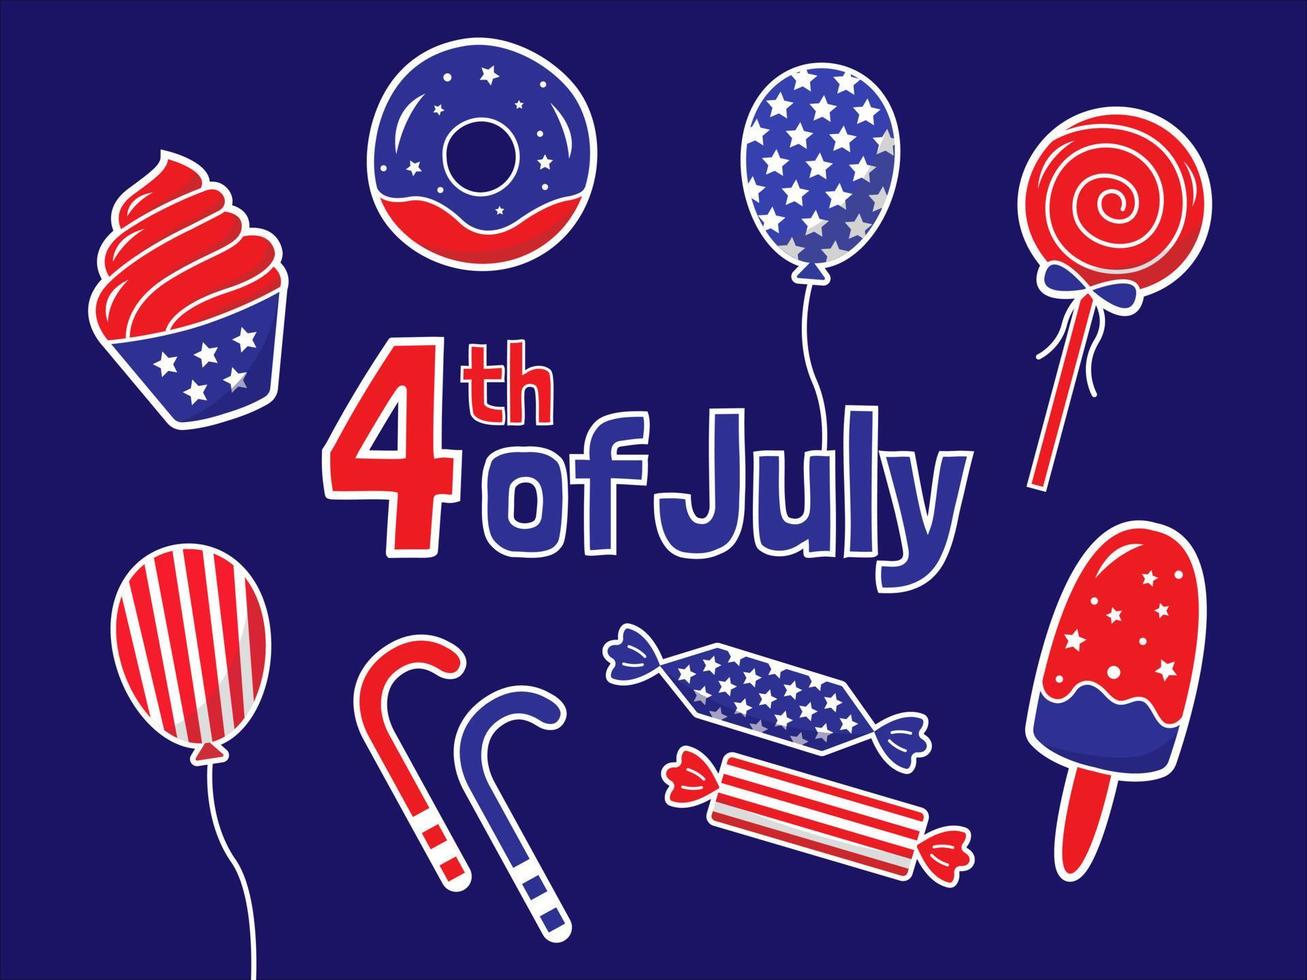 dia da independência americana 4 de julho. conjunto de ilustração plana de cupcake, donut, doces, balões, sorvete, pirulitos. vetor